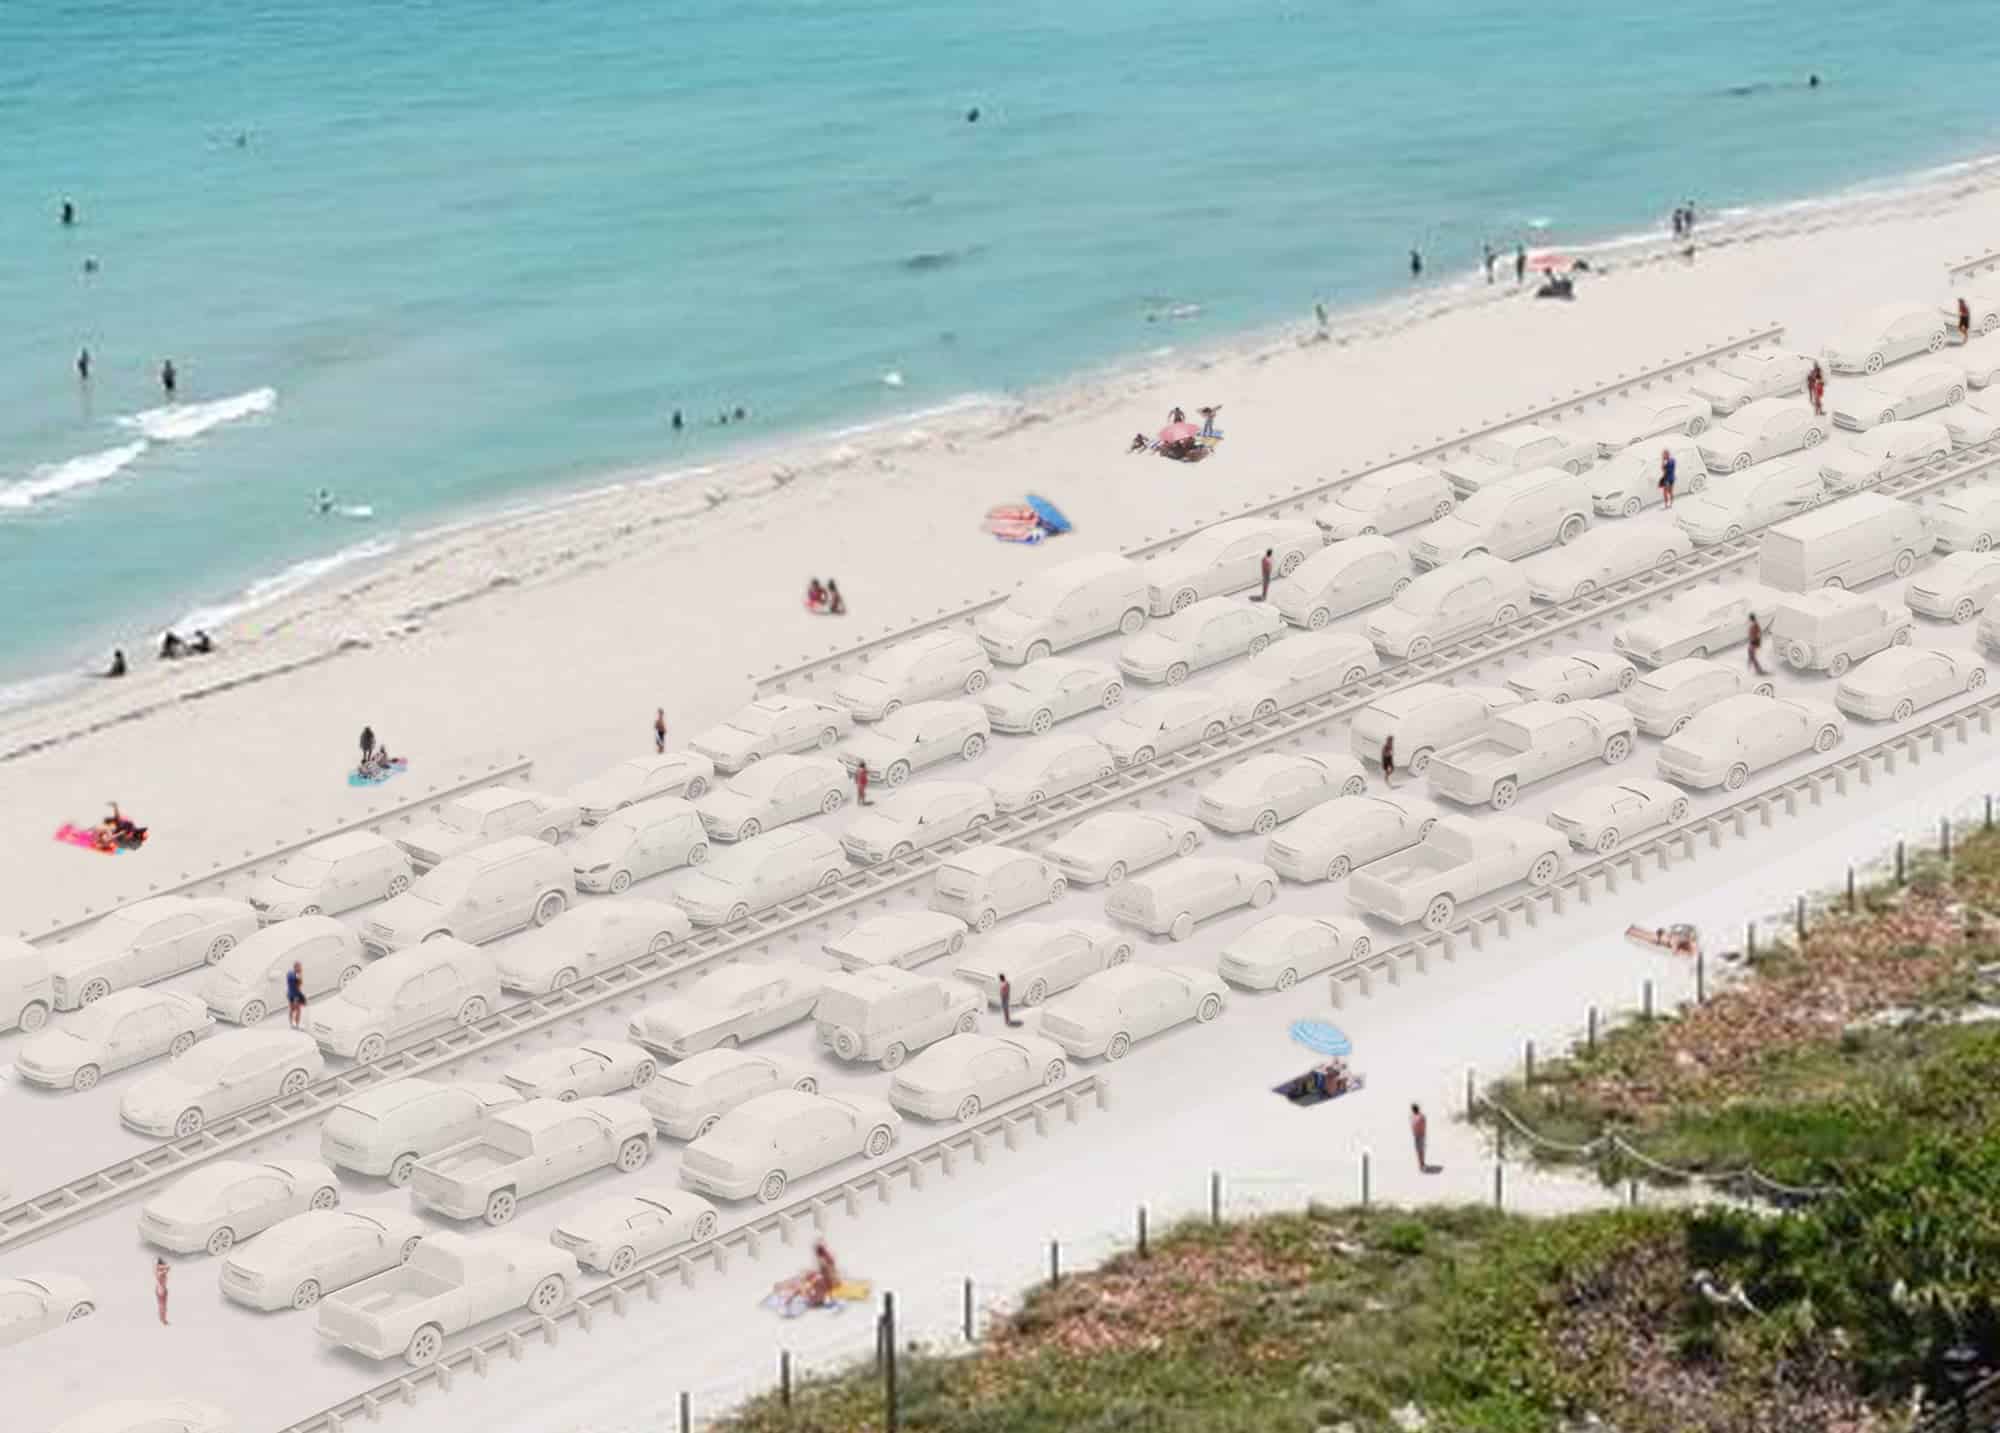 Leandro Erlich bouwt een file van zand in Miami